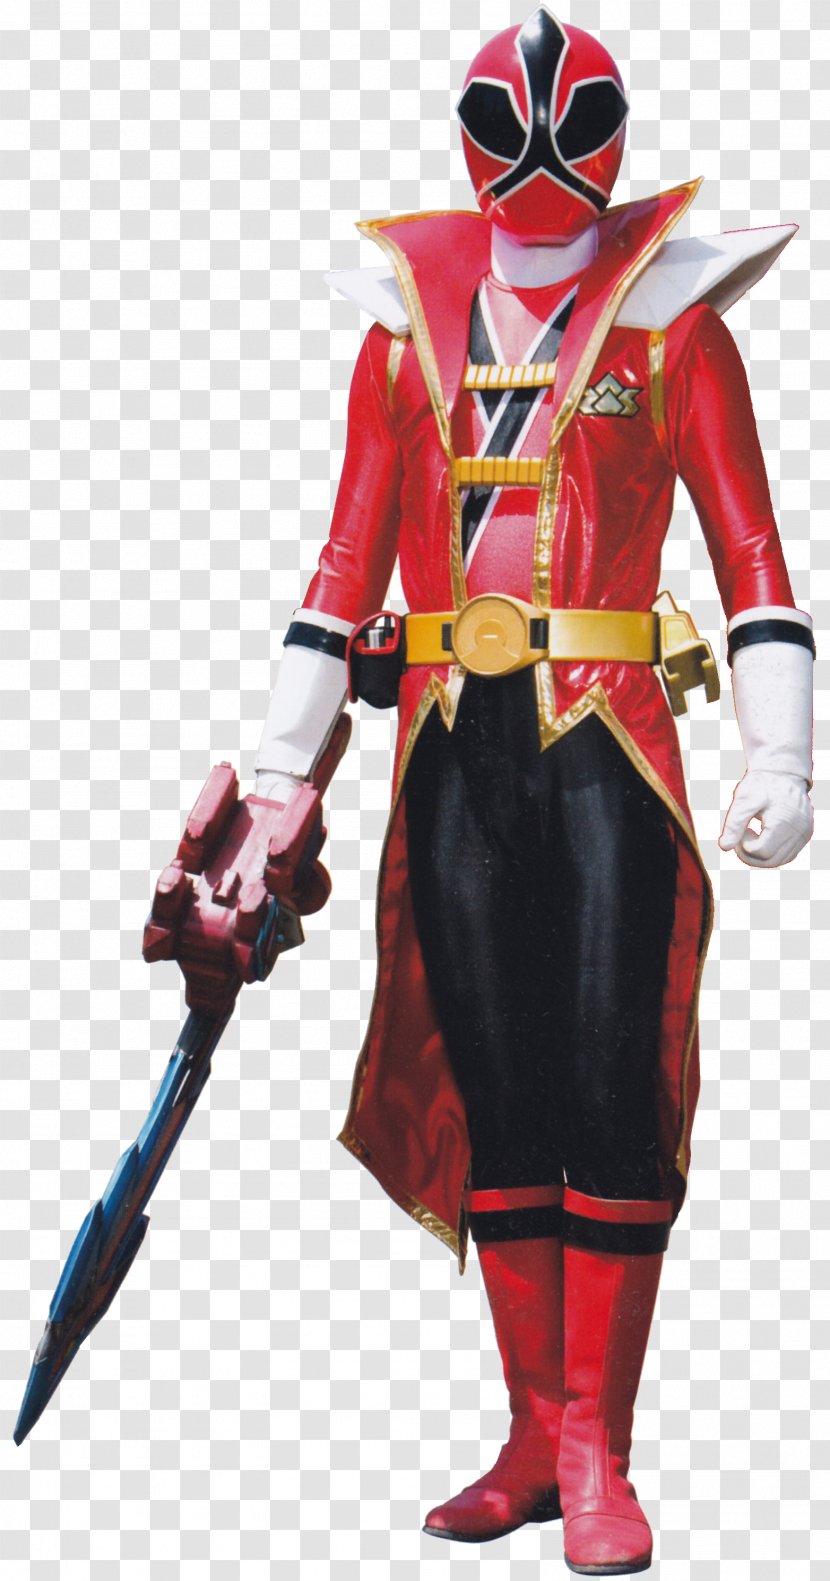 Billy Cranston Tommy Oliver Saban's Power Rangers Samurai Red Ranger Super - Spd Transparent PNG